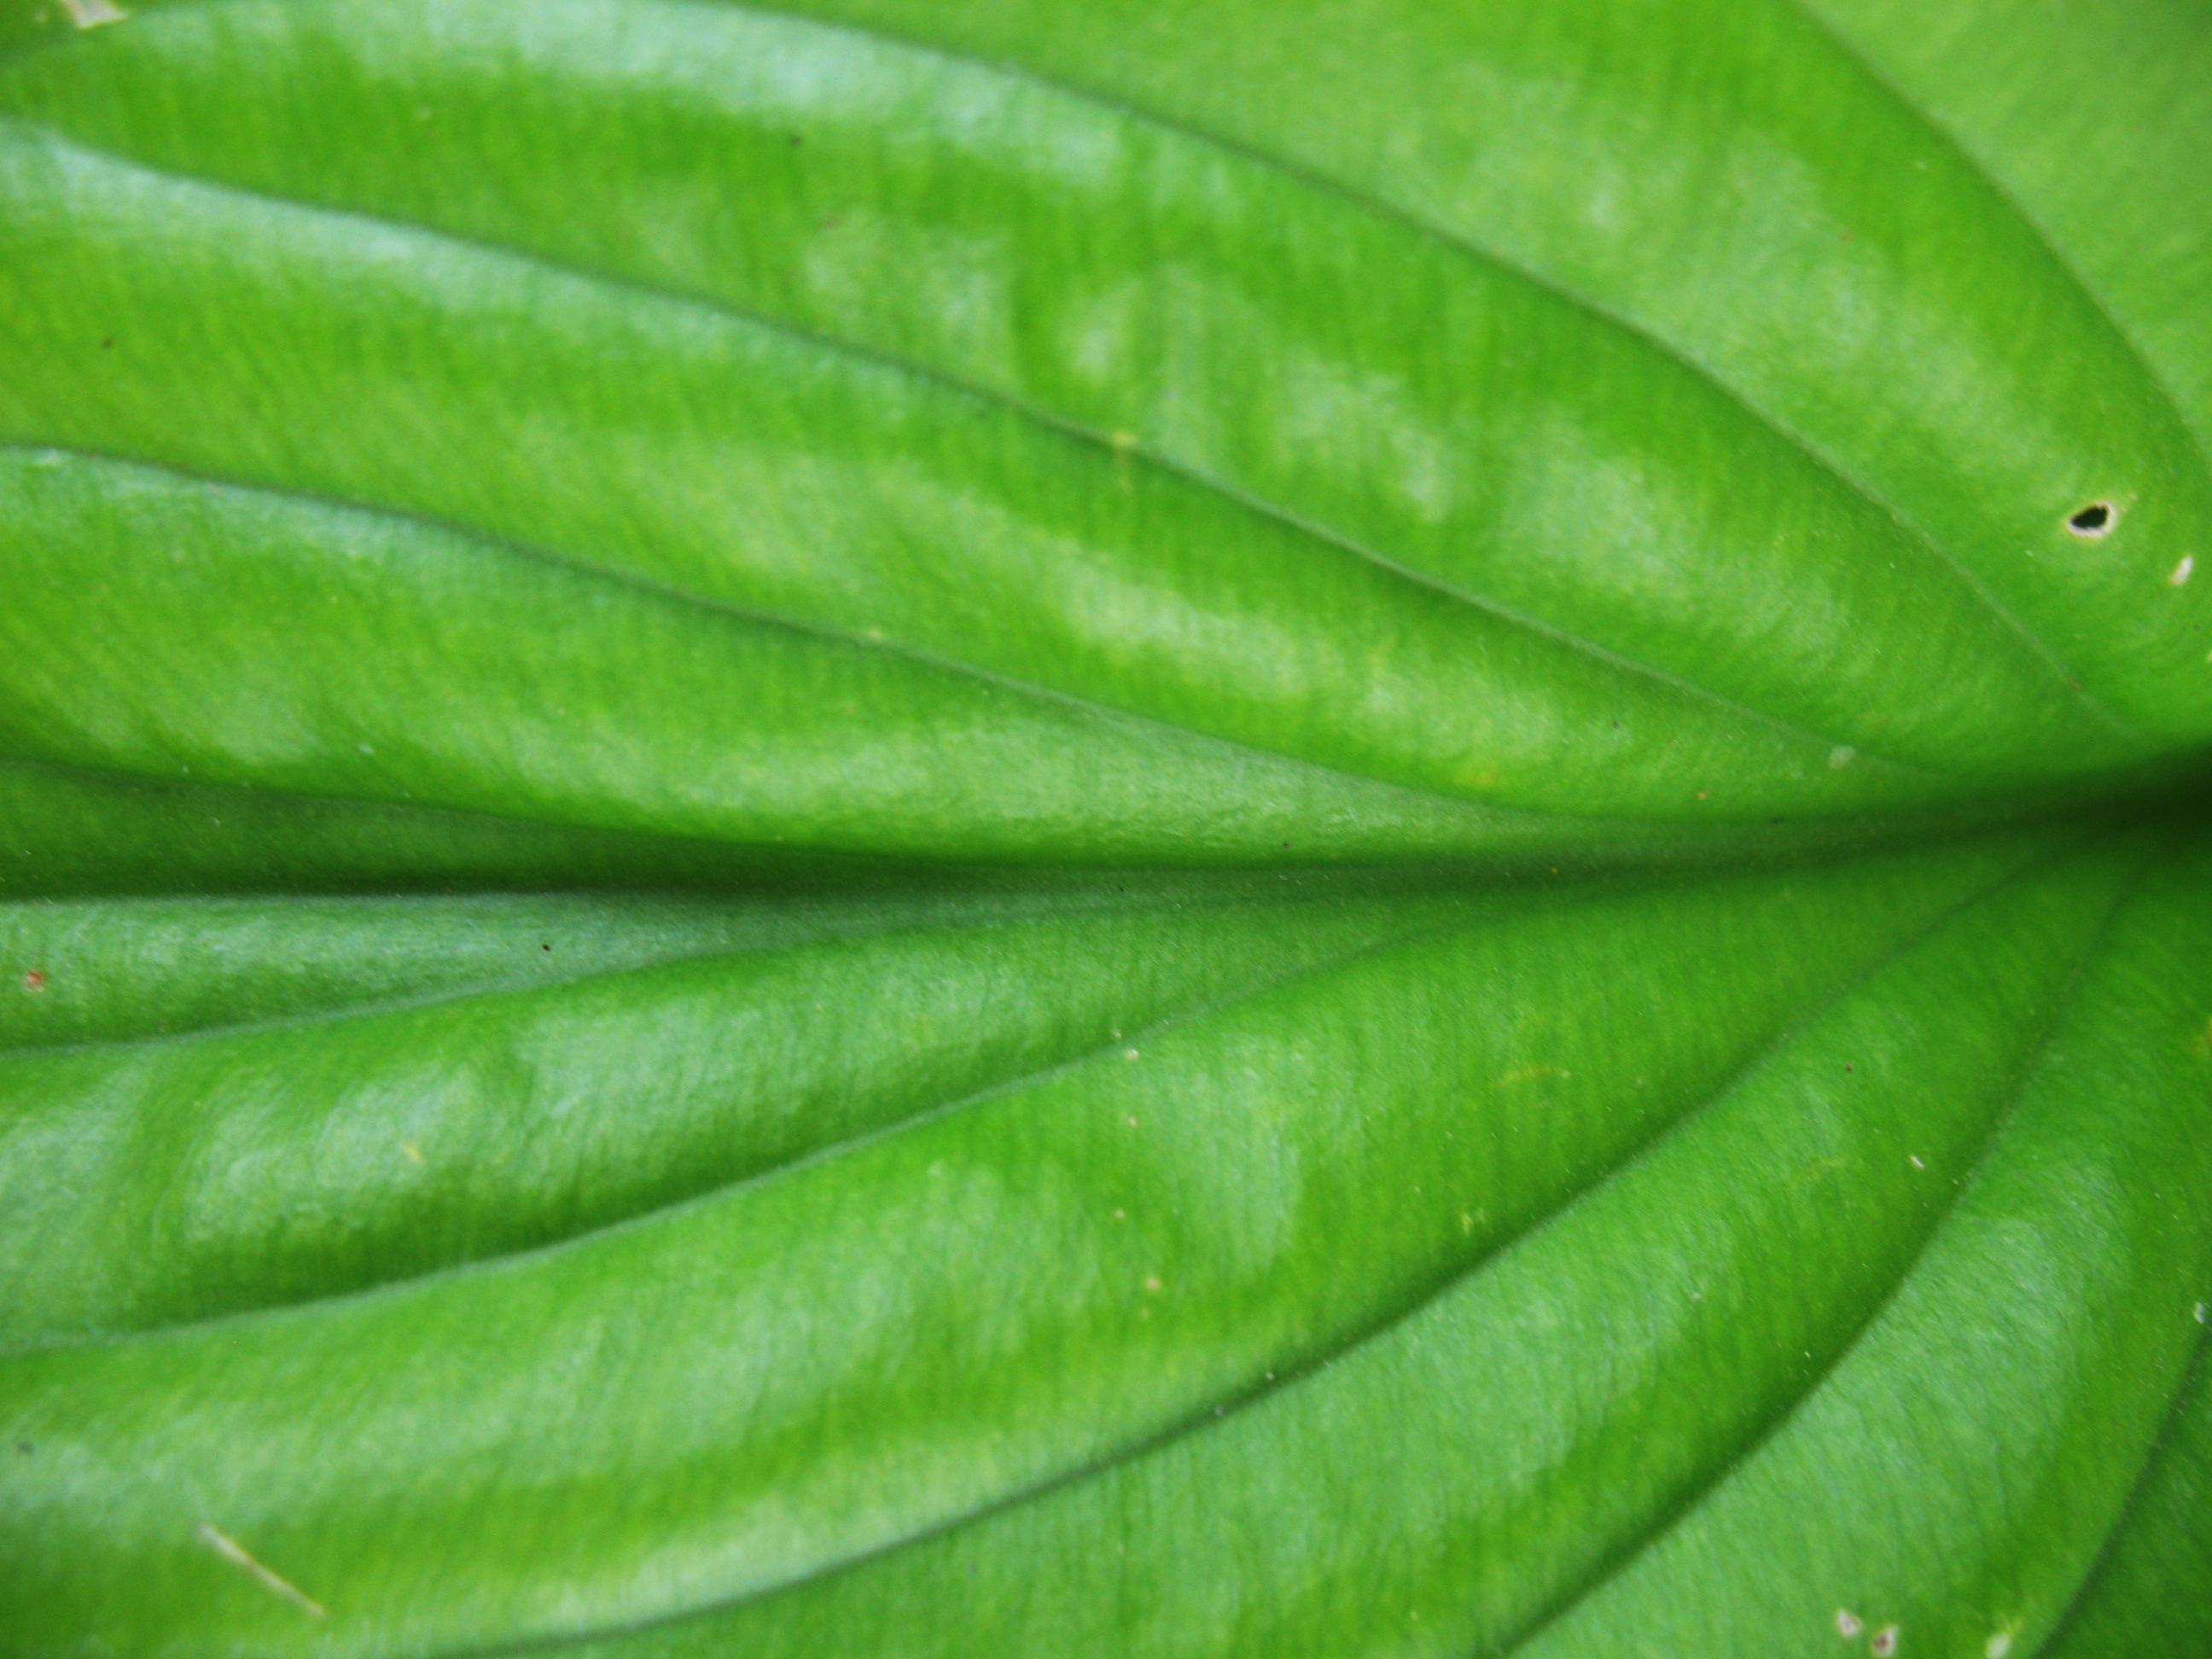 Растение фон, текстура зеленого растения скачать